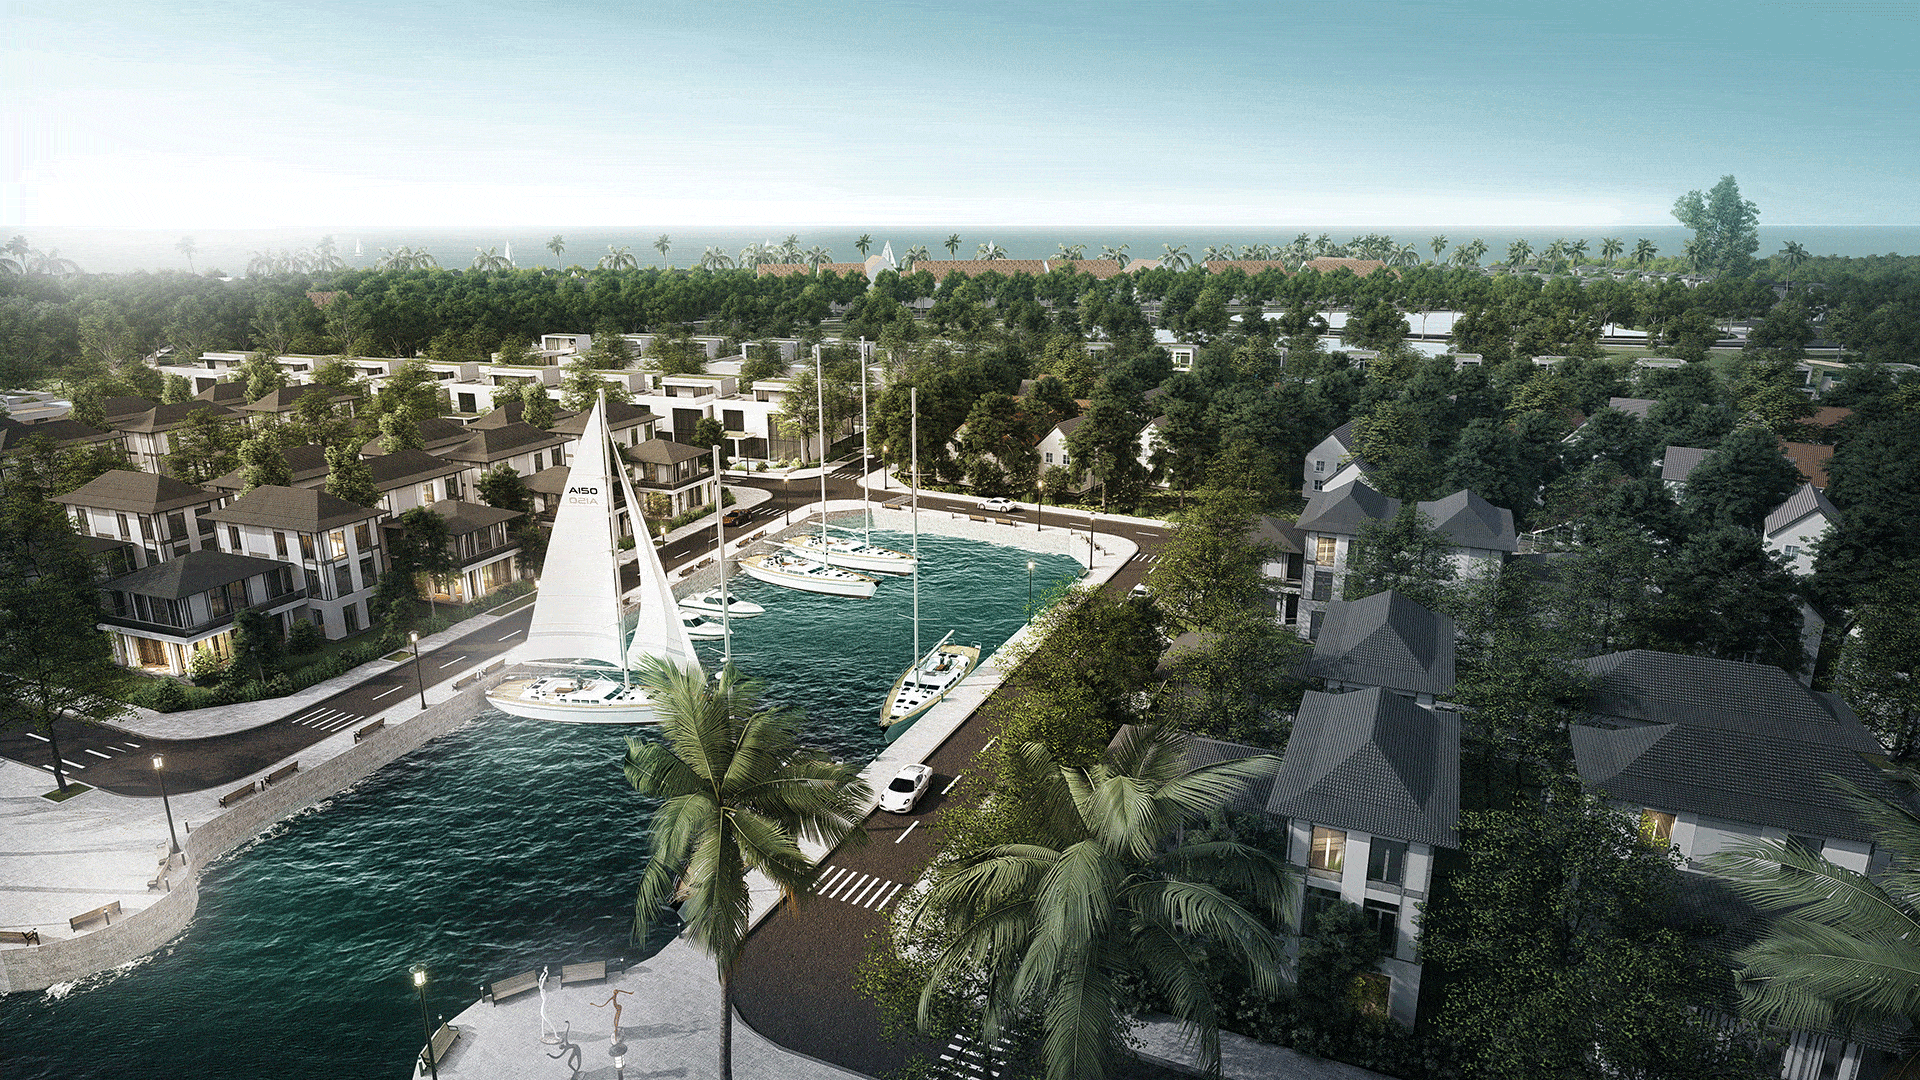 Dự án Biệt thự Biển Lariviere, Bảo Ninh Đồng Hới Quảng Bình